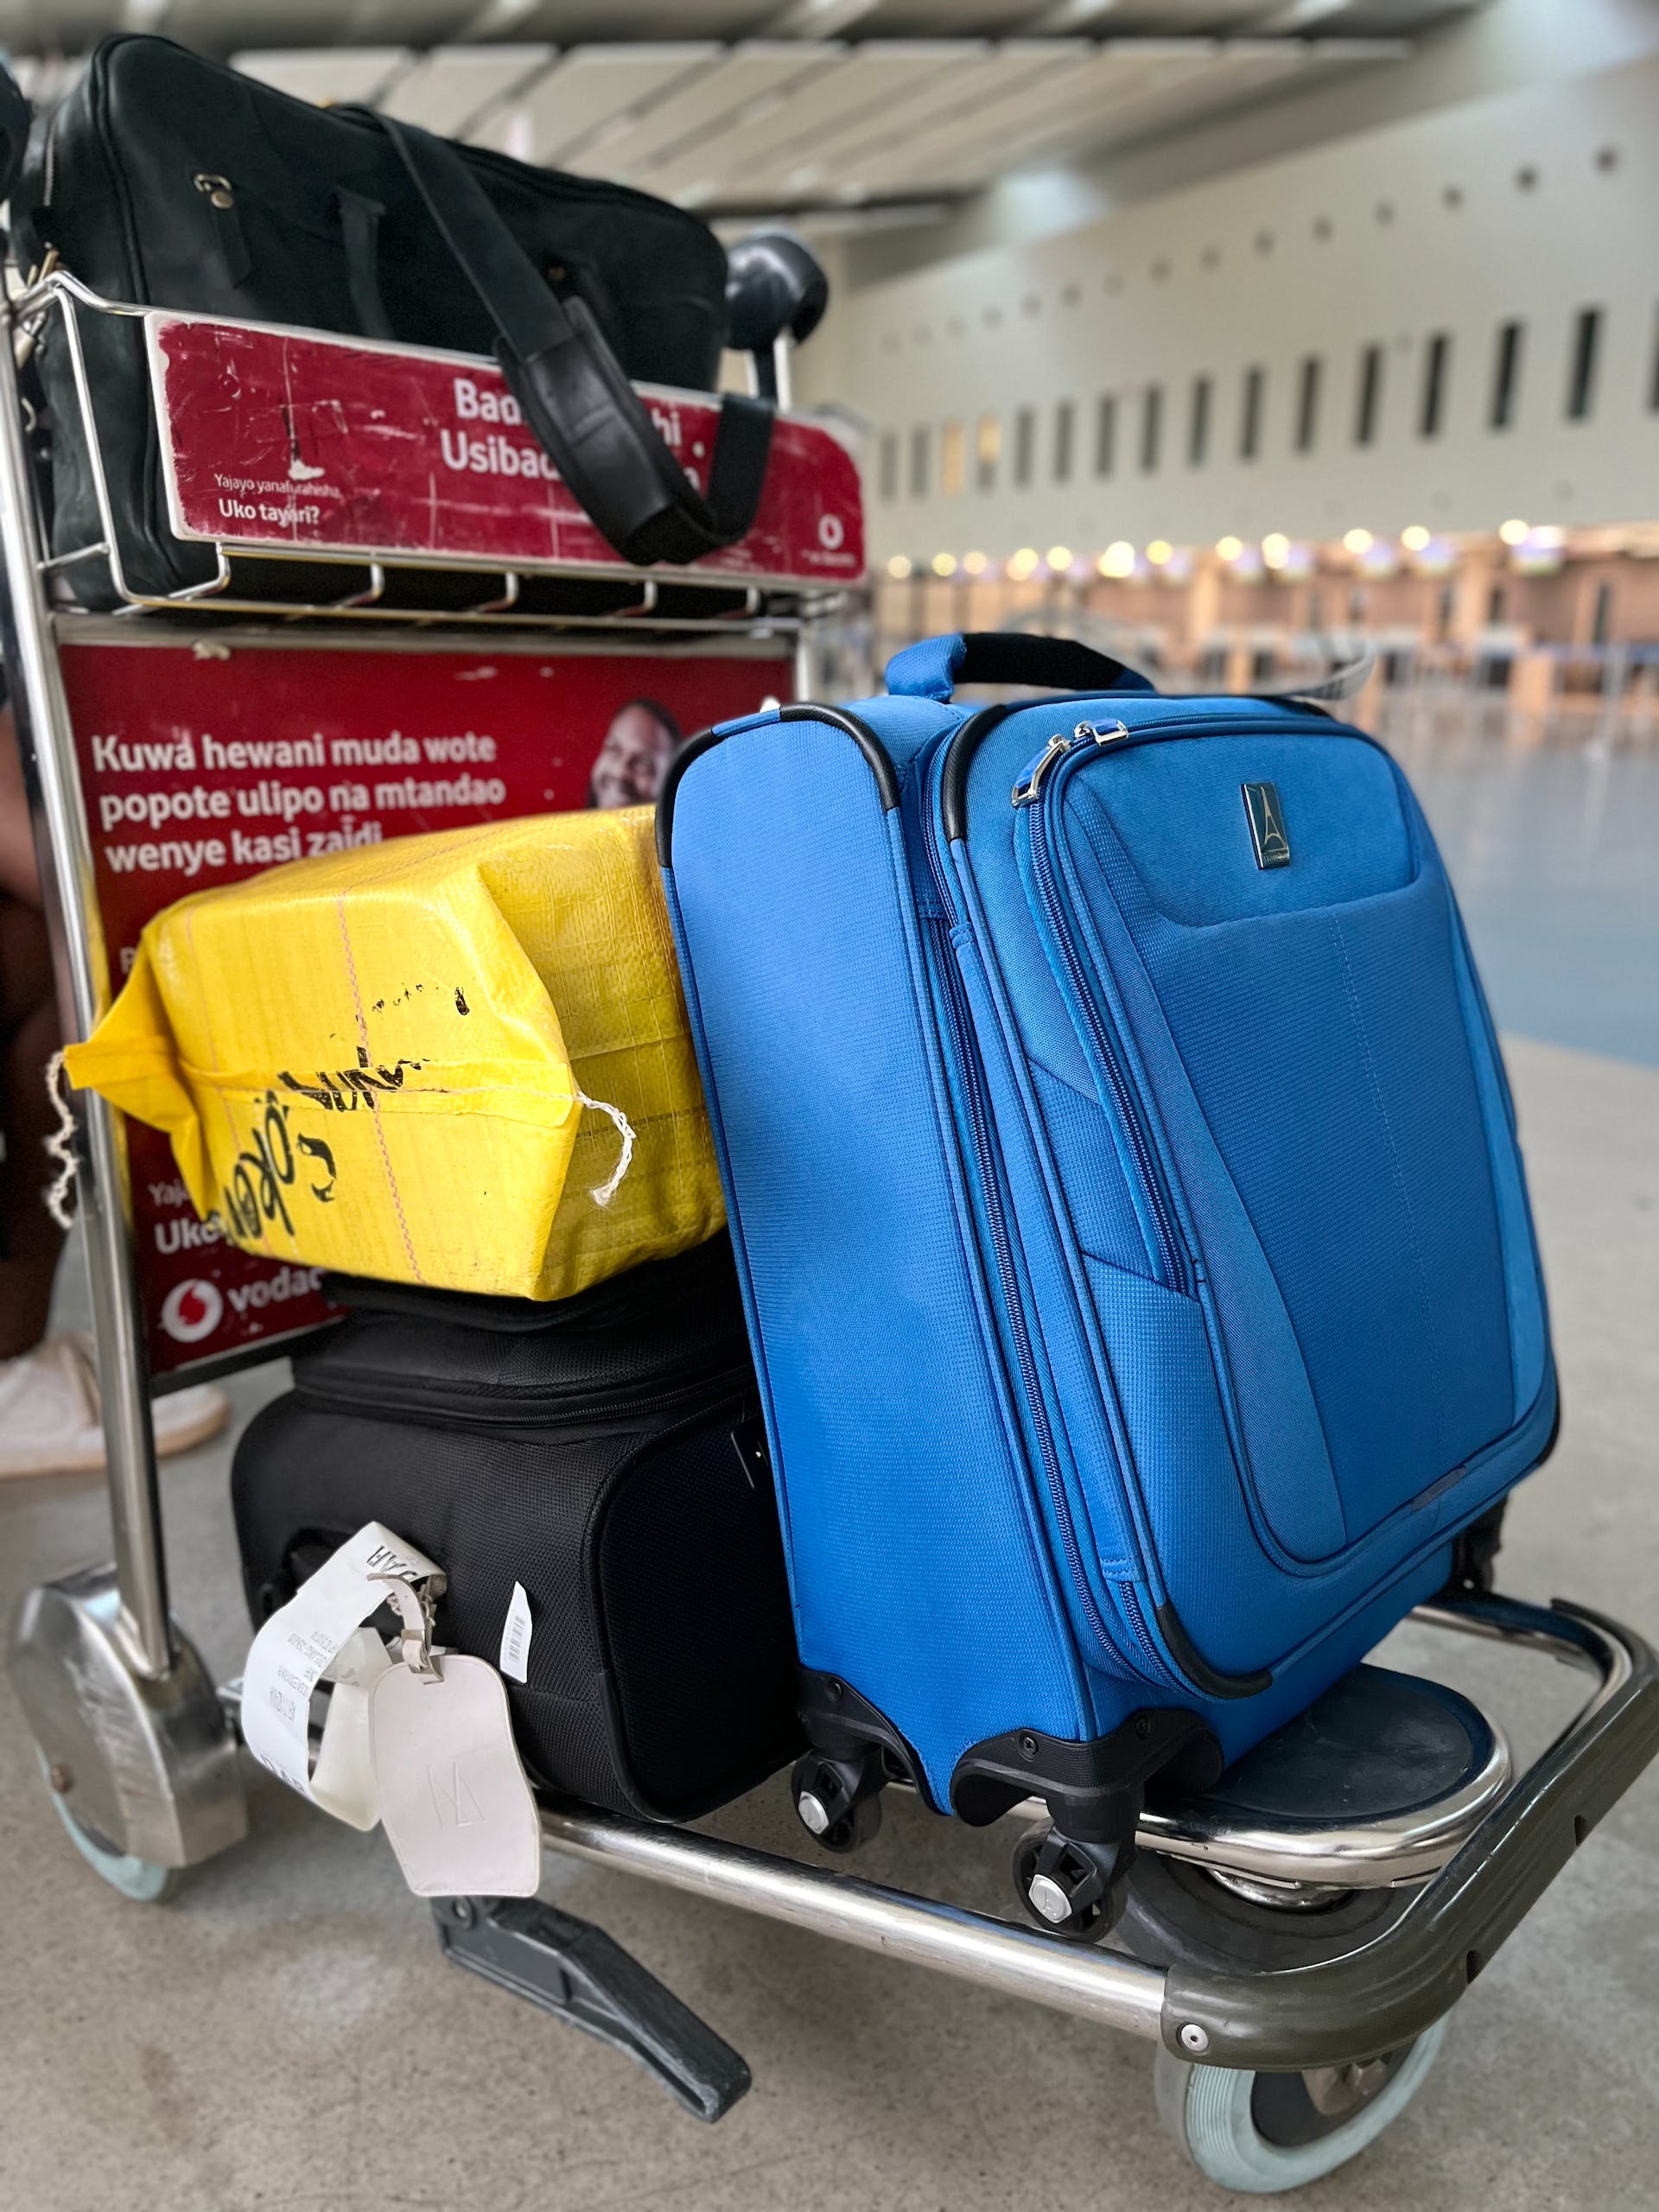 Bagages sur un chariot dans un aéroport | Source : Pexels